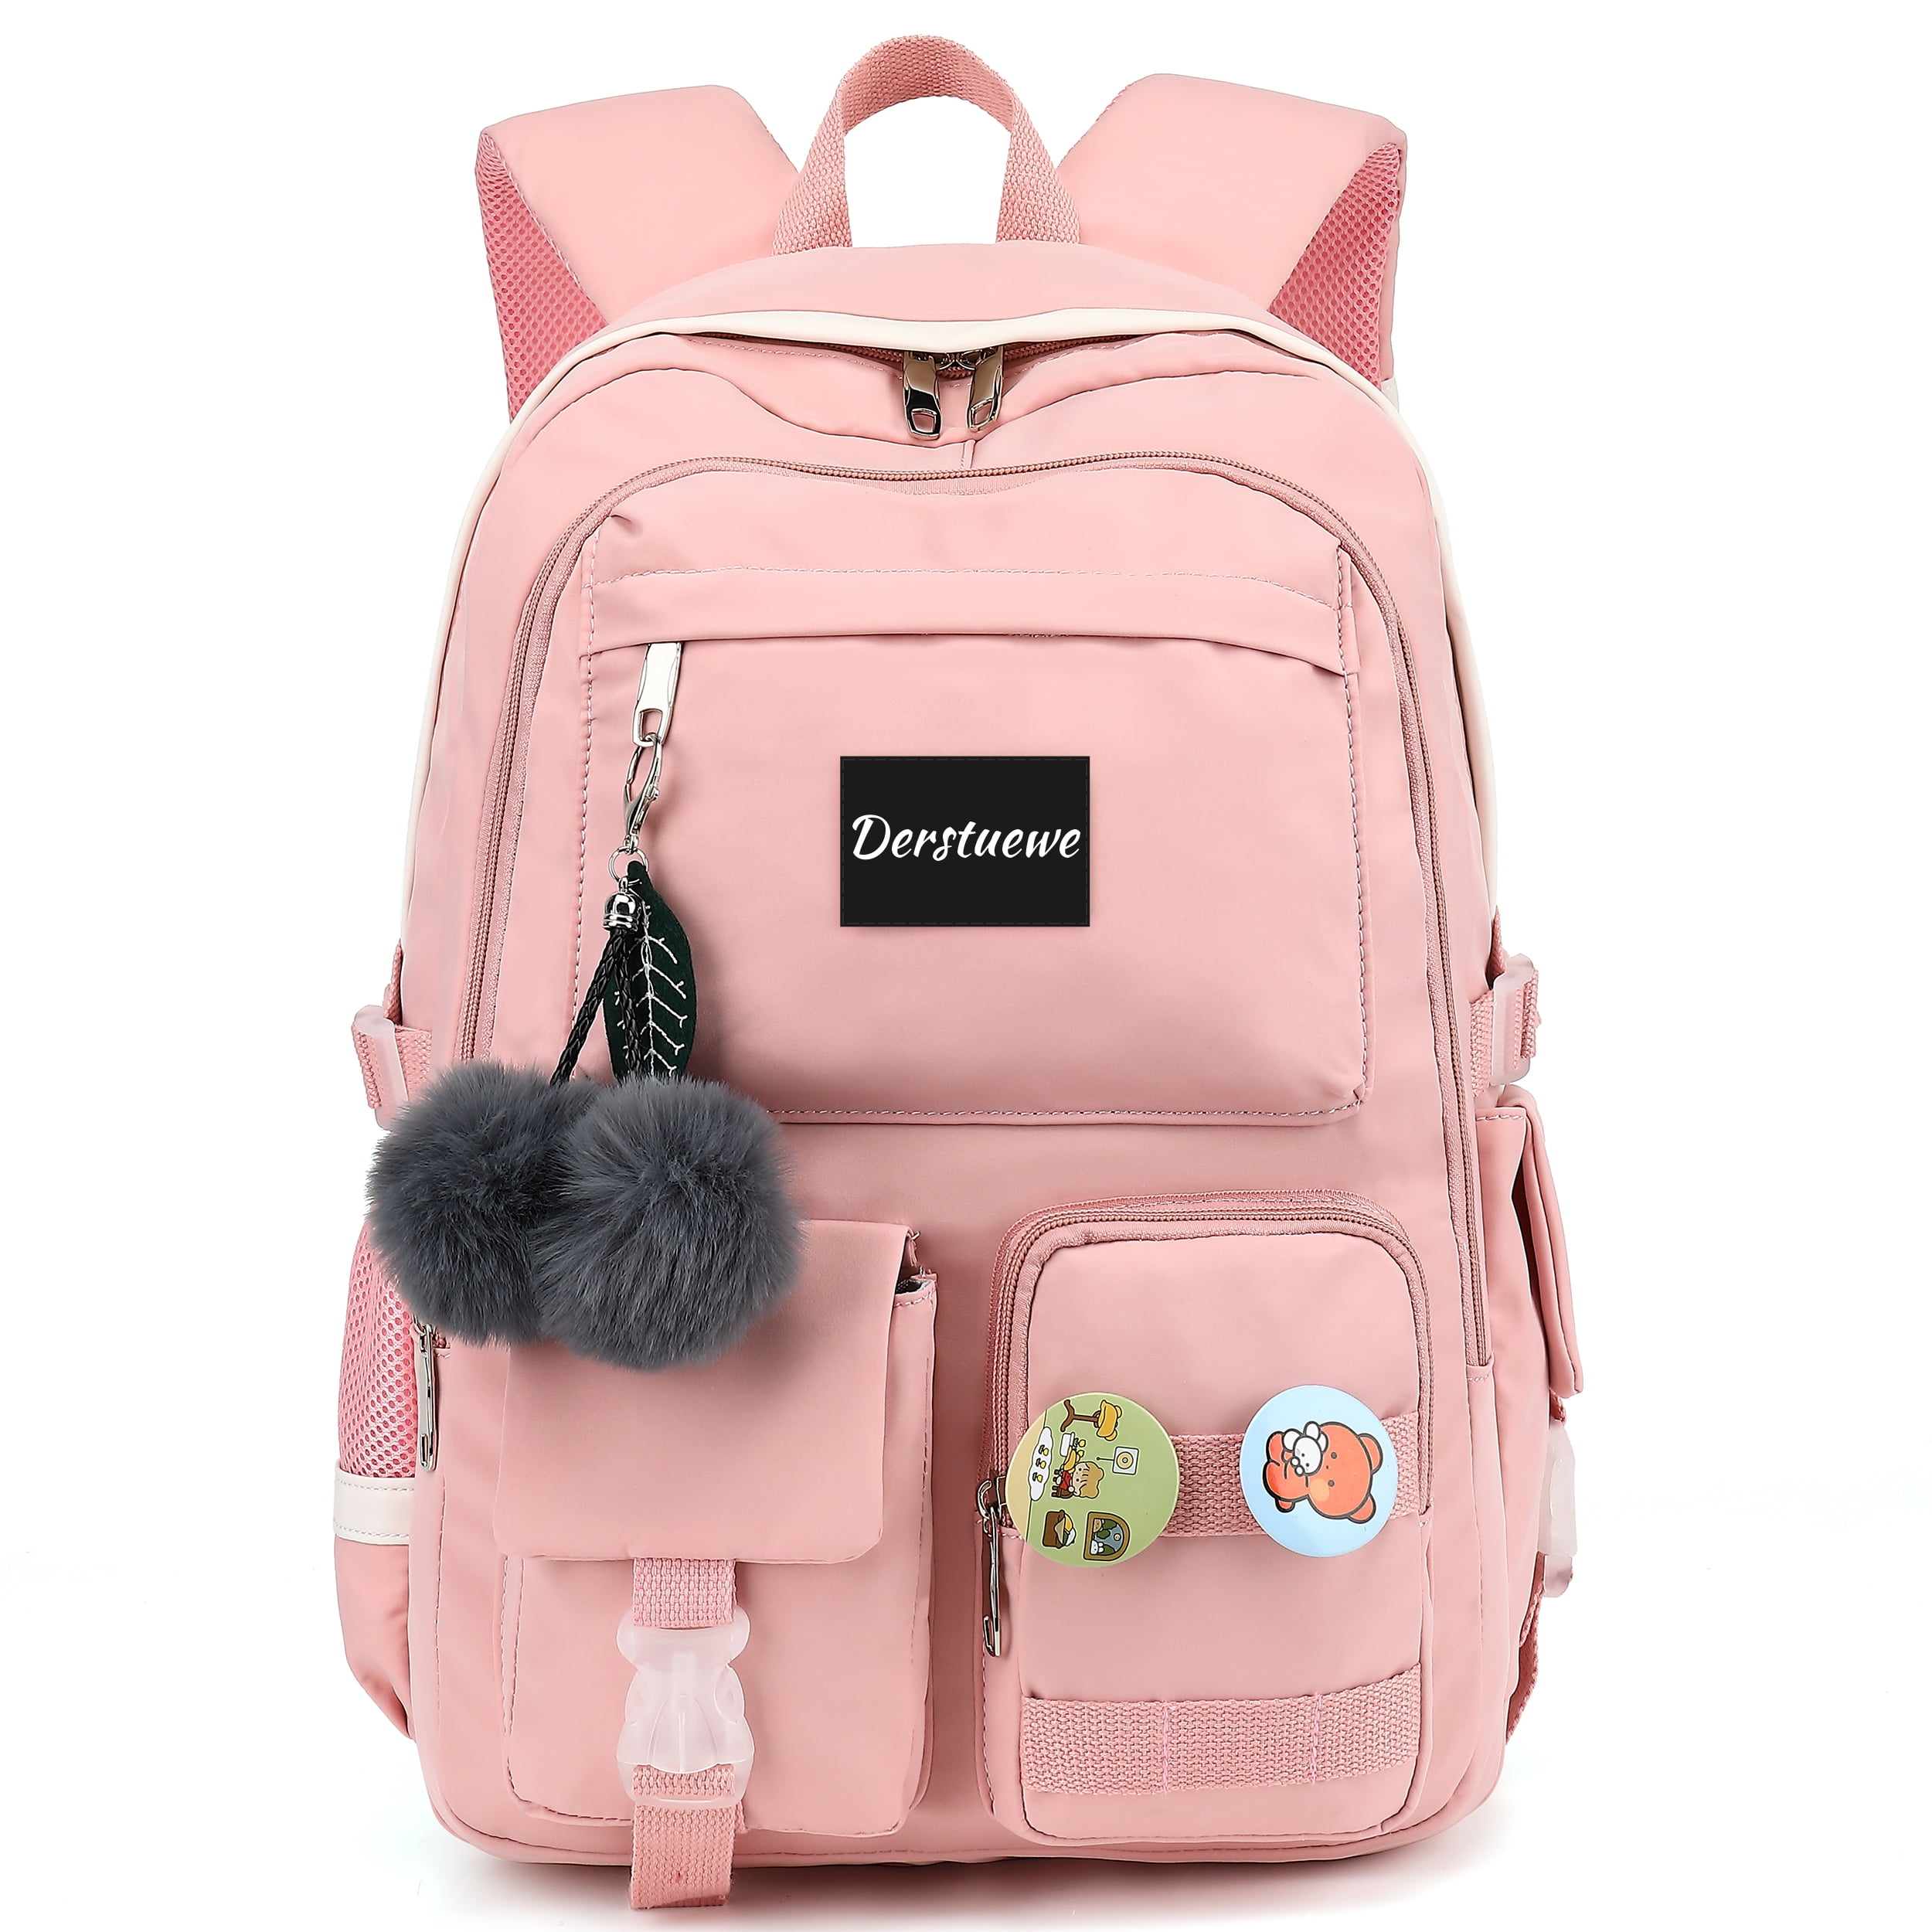 Derstuewe School Bag College Backpack, Large Bookbags for Teens Girls ...